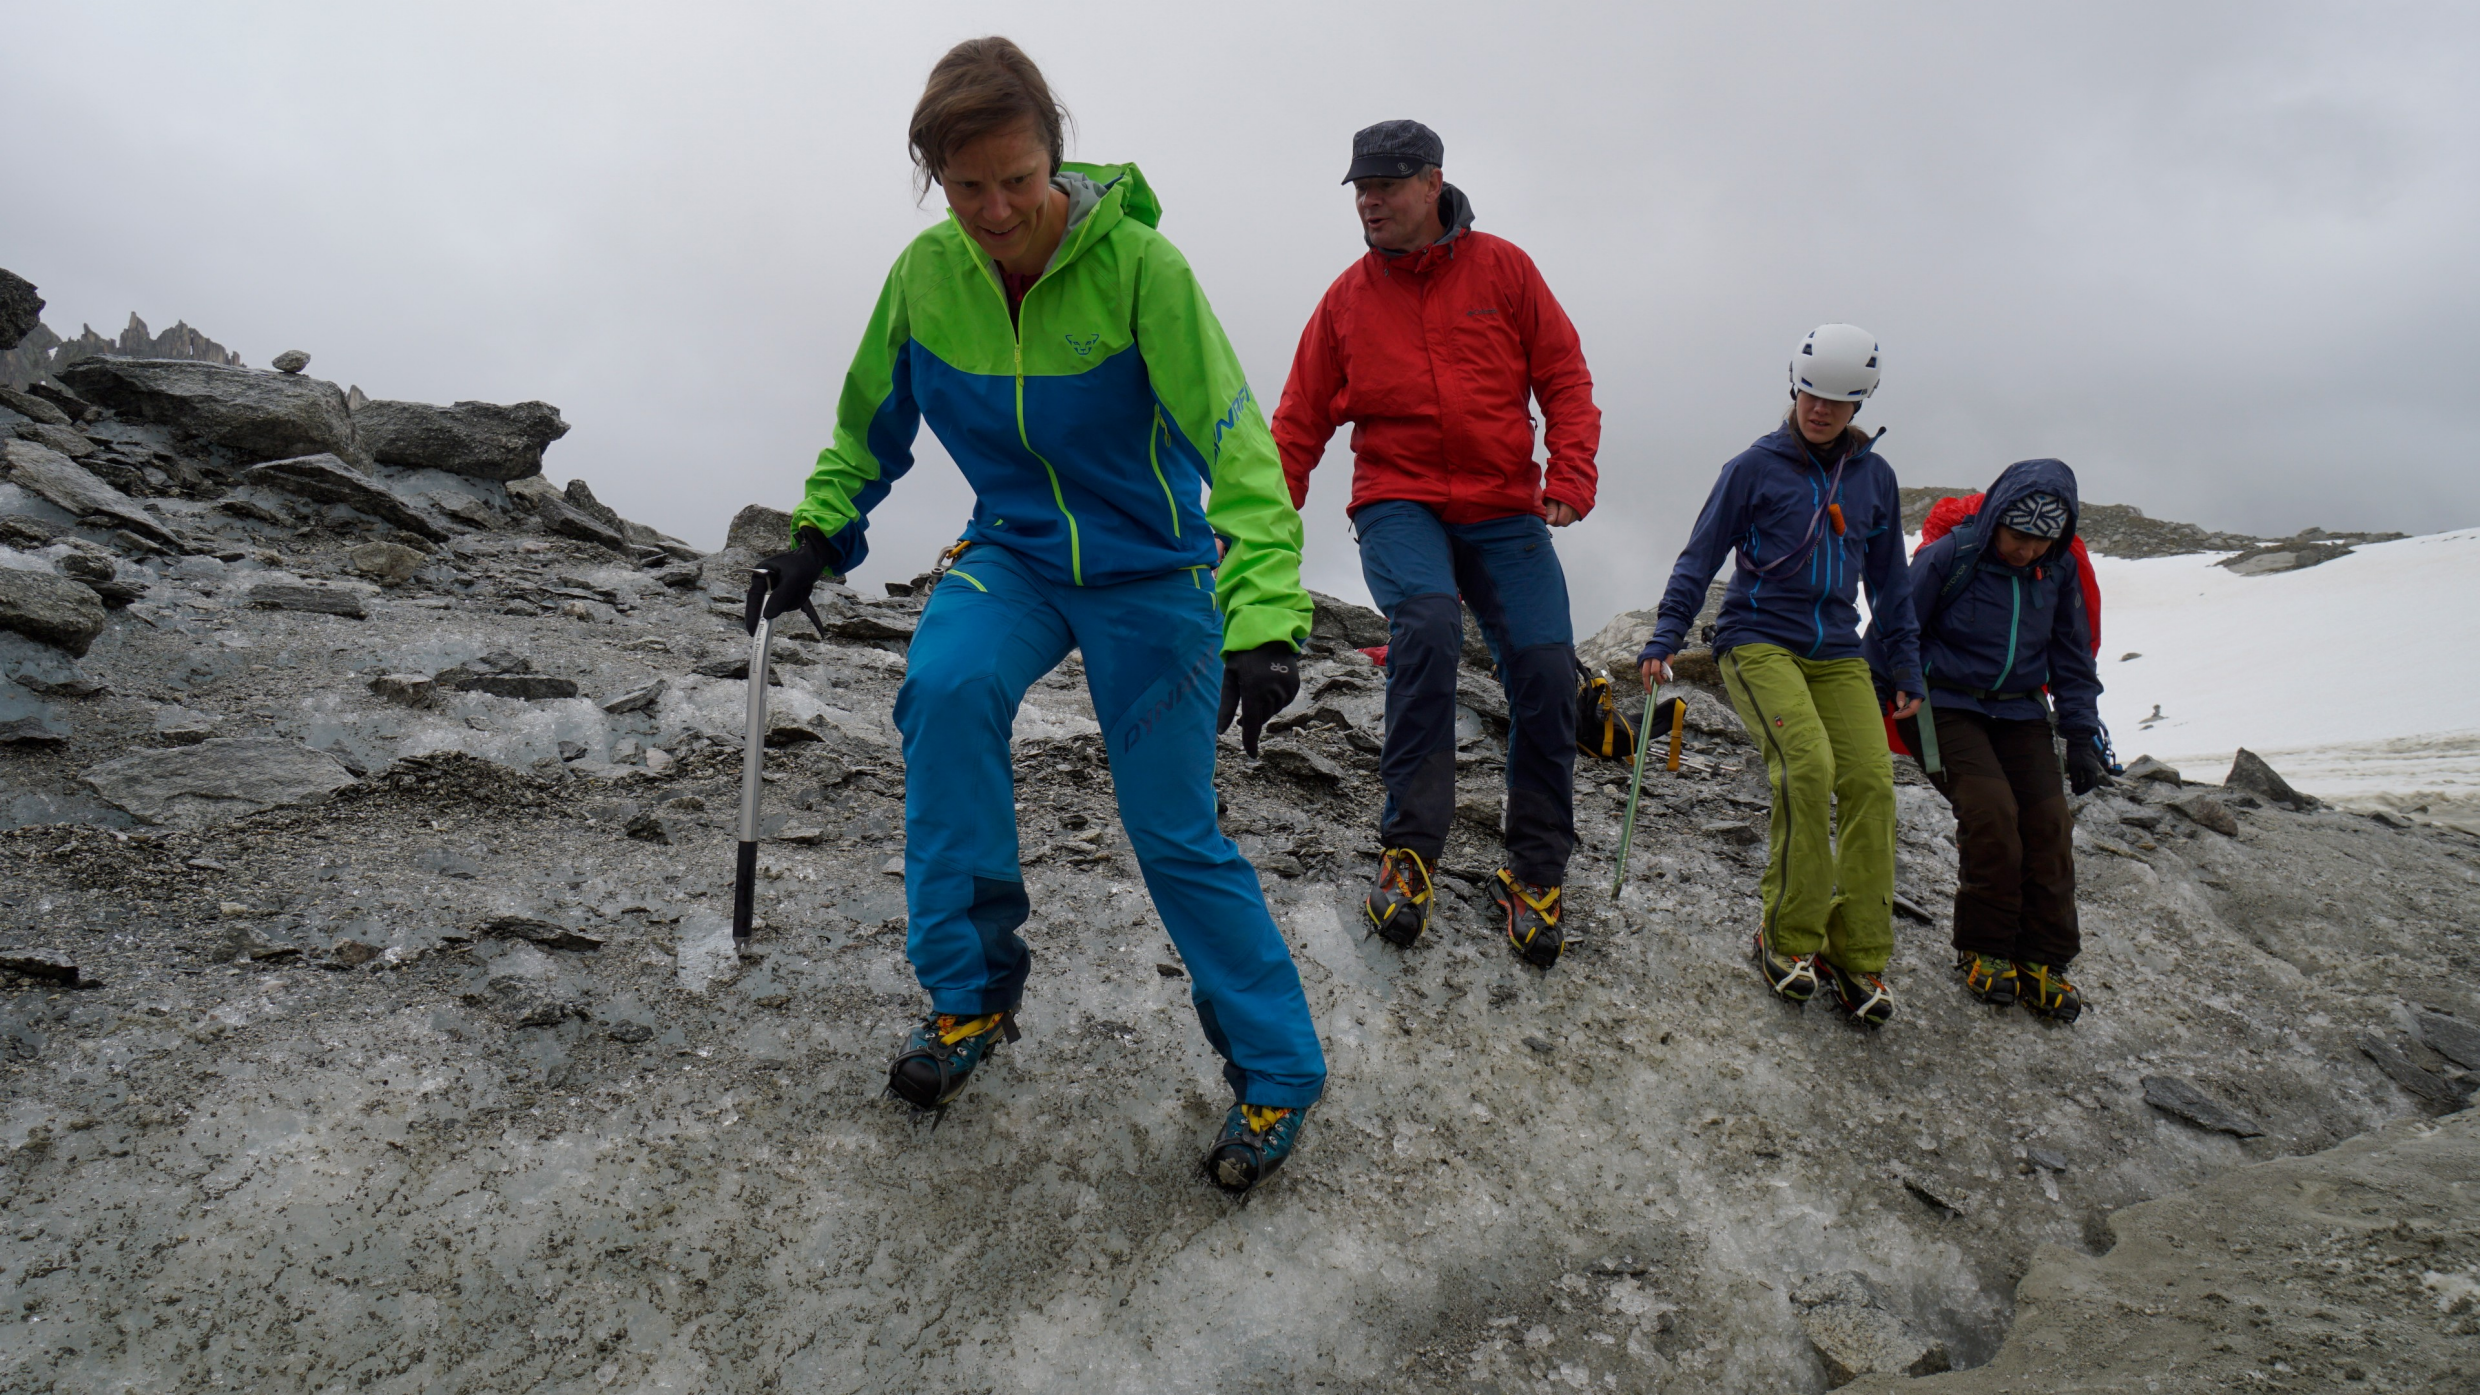 Berg+Ski: Hochtourenausbildung – Steigeisengehen im steilen Gelände 